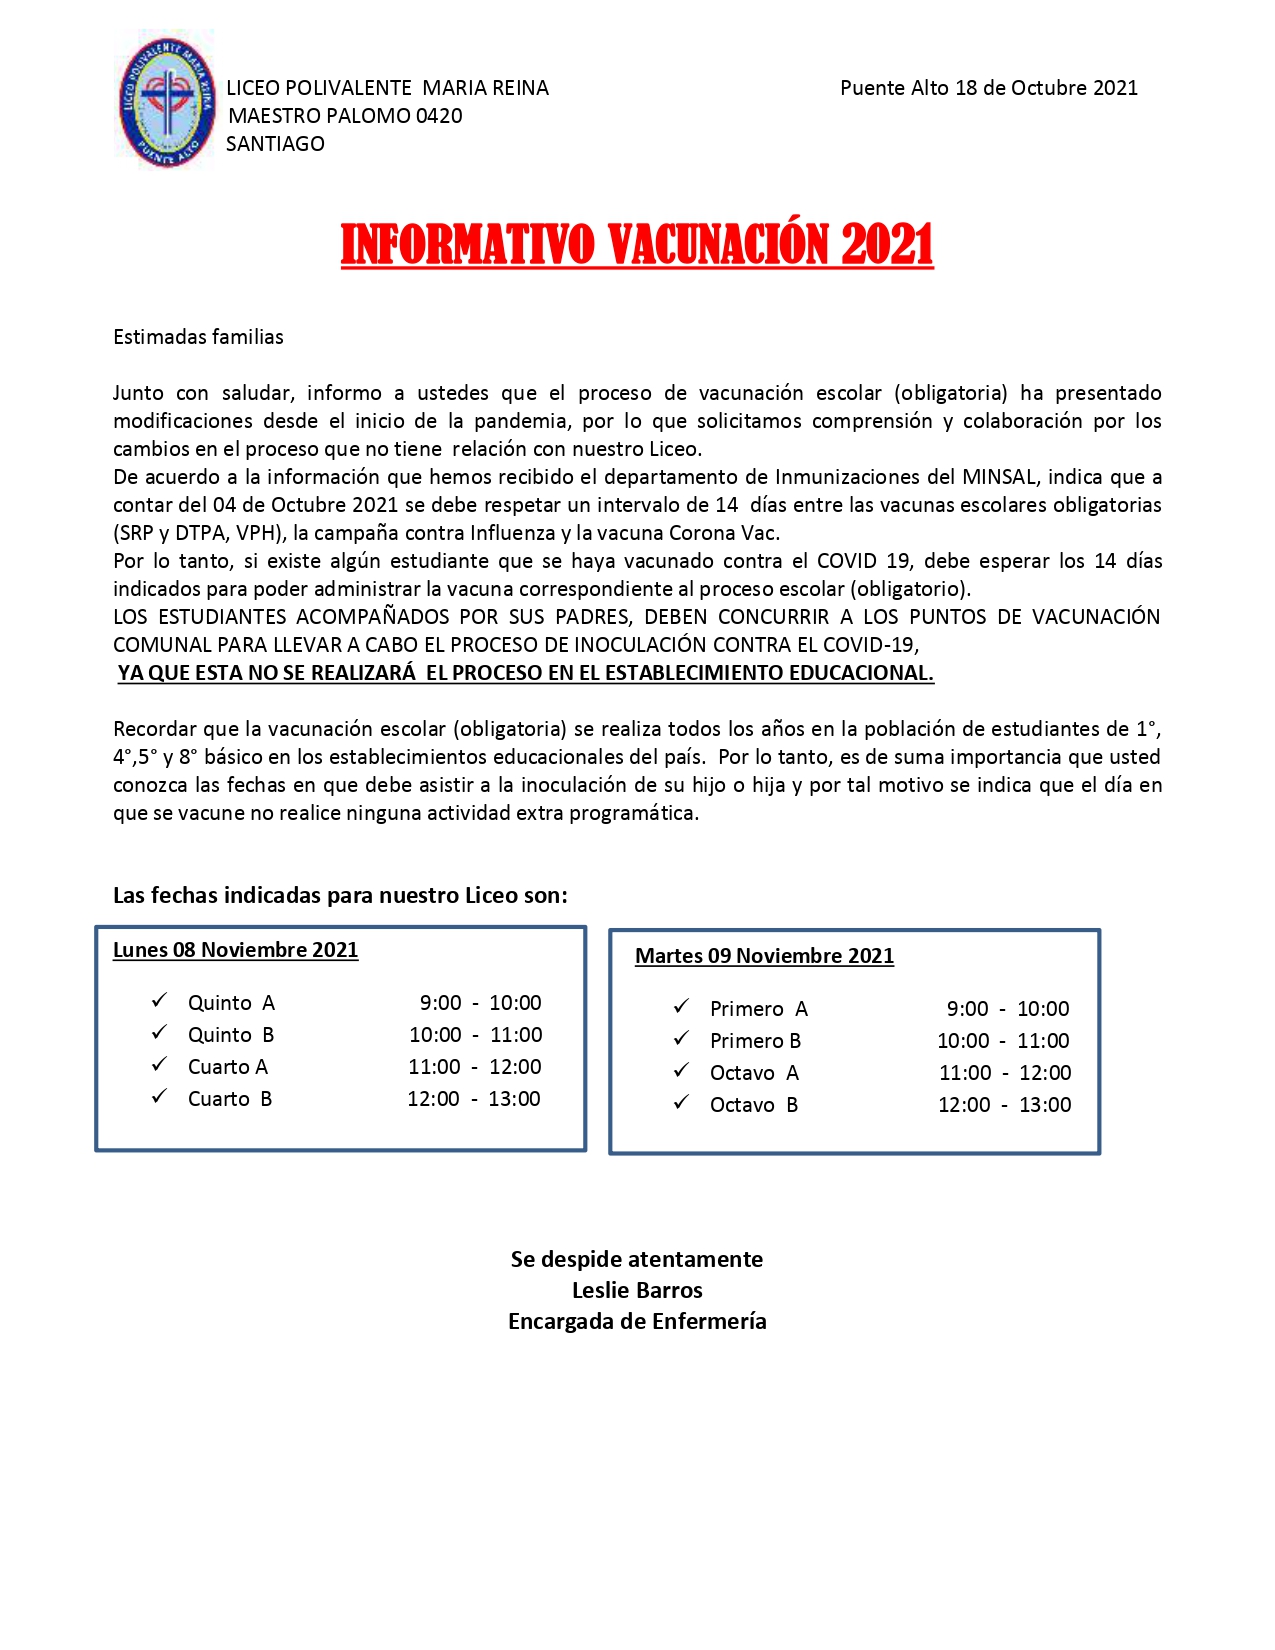 INFORMATIVO VACUNACIÓN 2021 page 0001